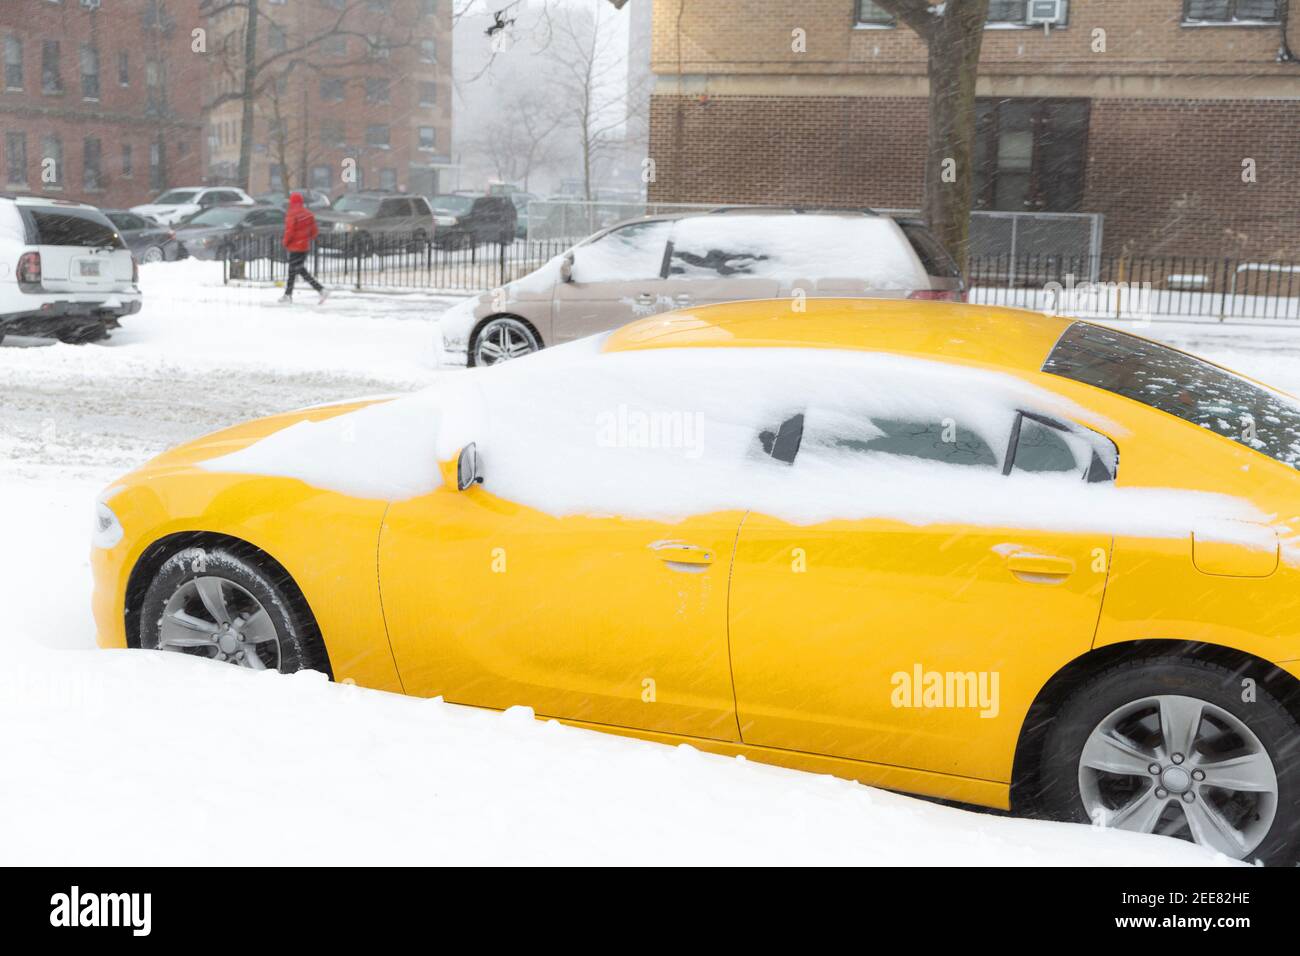 Voiture jaune recouverte de neige avec des bâtiments à l'arrière-plan sur la rue City. Sensation de neige et de circulation. Idées de travail à la maison. Banque D'Images